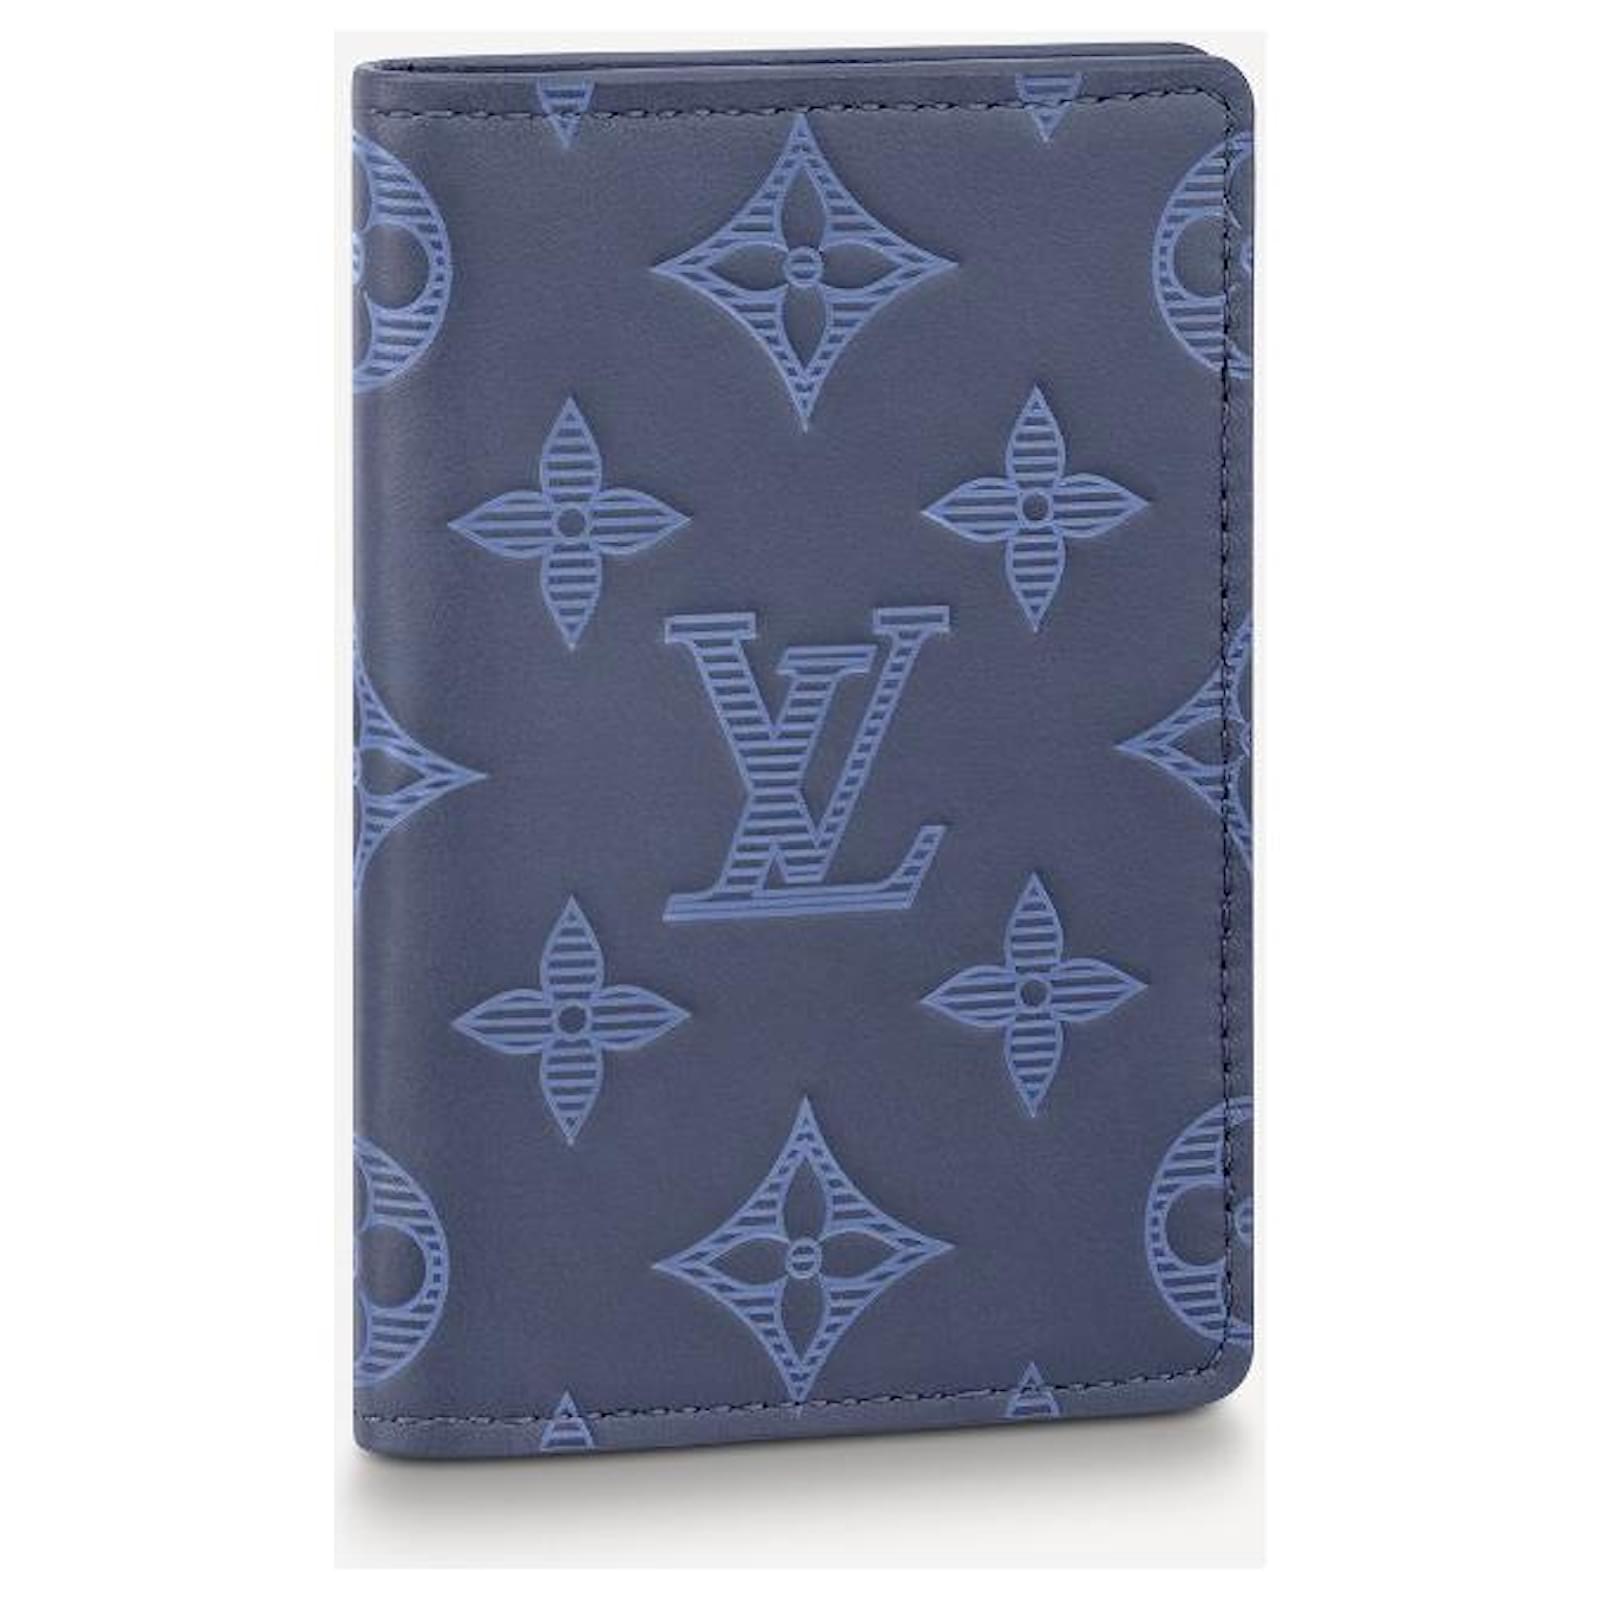 Louis Vuitton Pacific Blue Monogram Slender Wallet